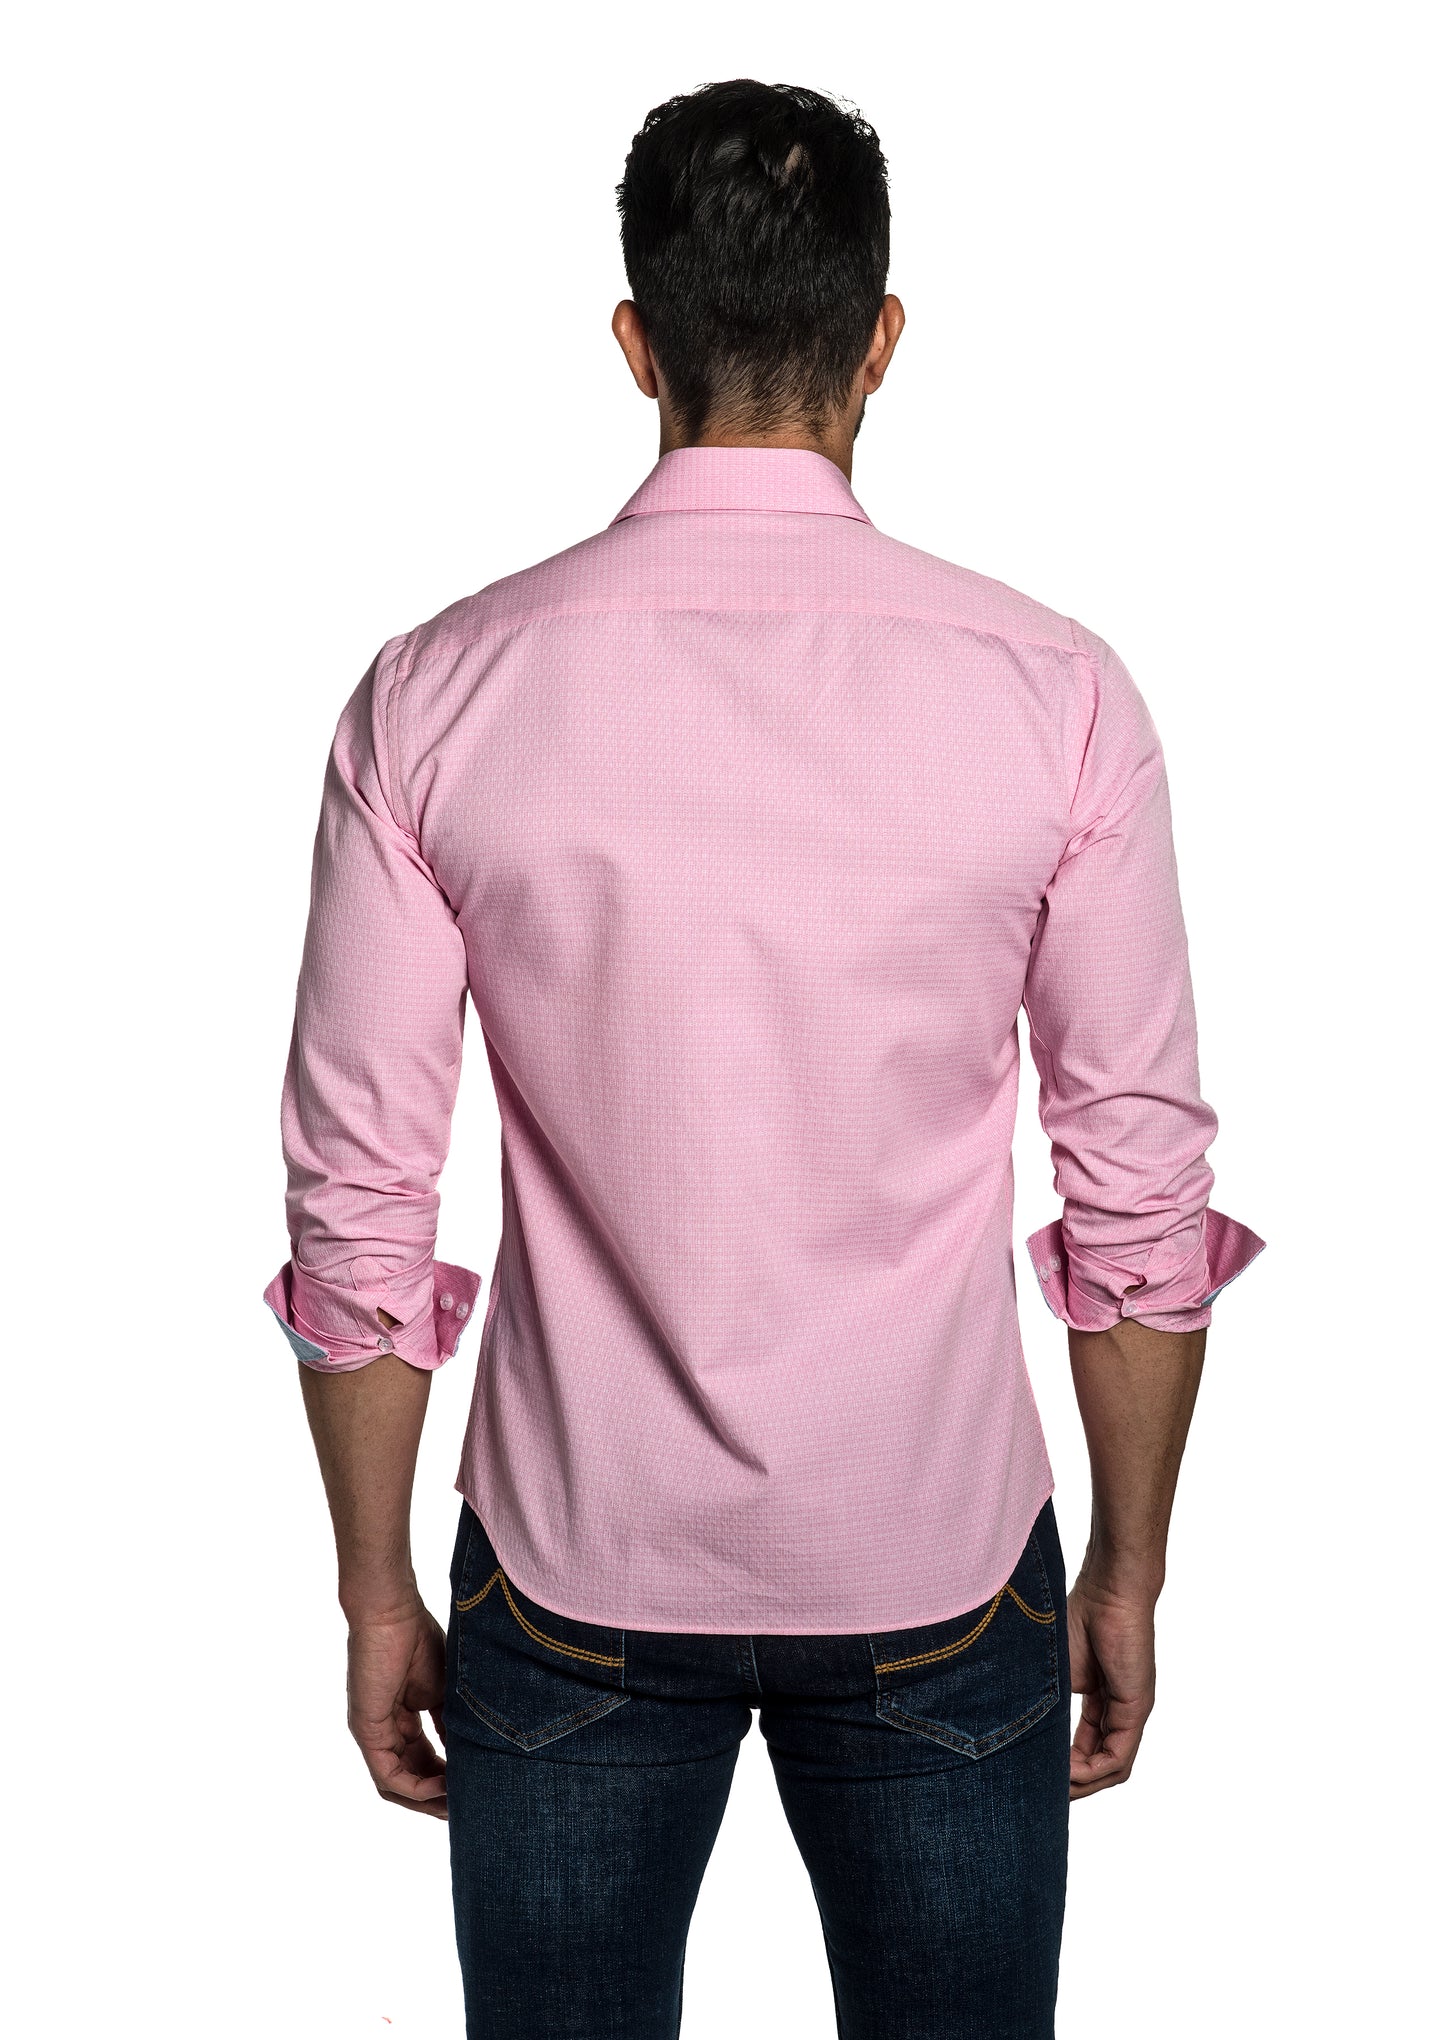 Light Pink Long Sleeve Shirt T-6700